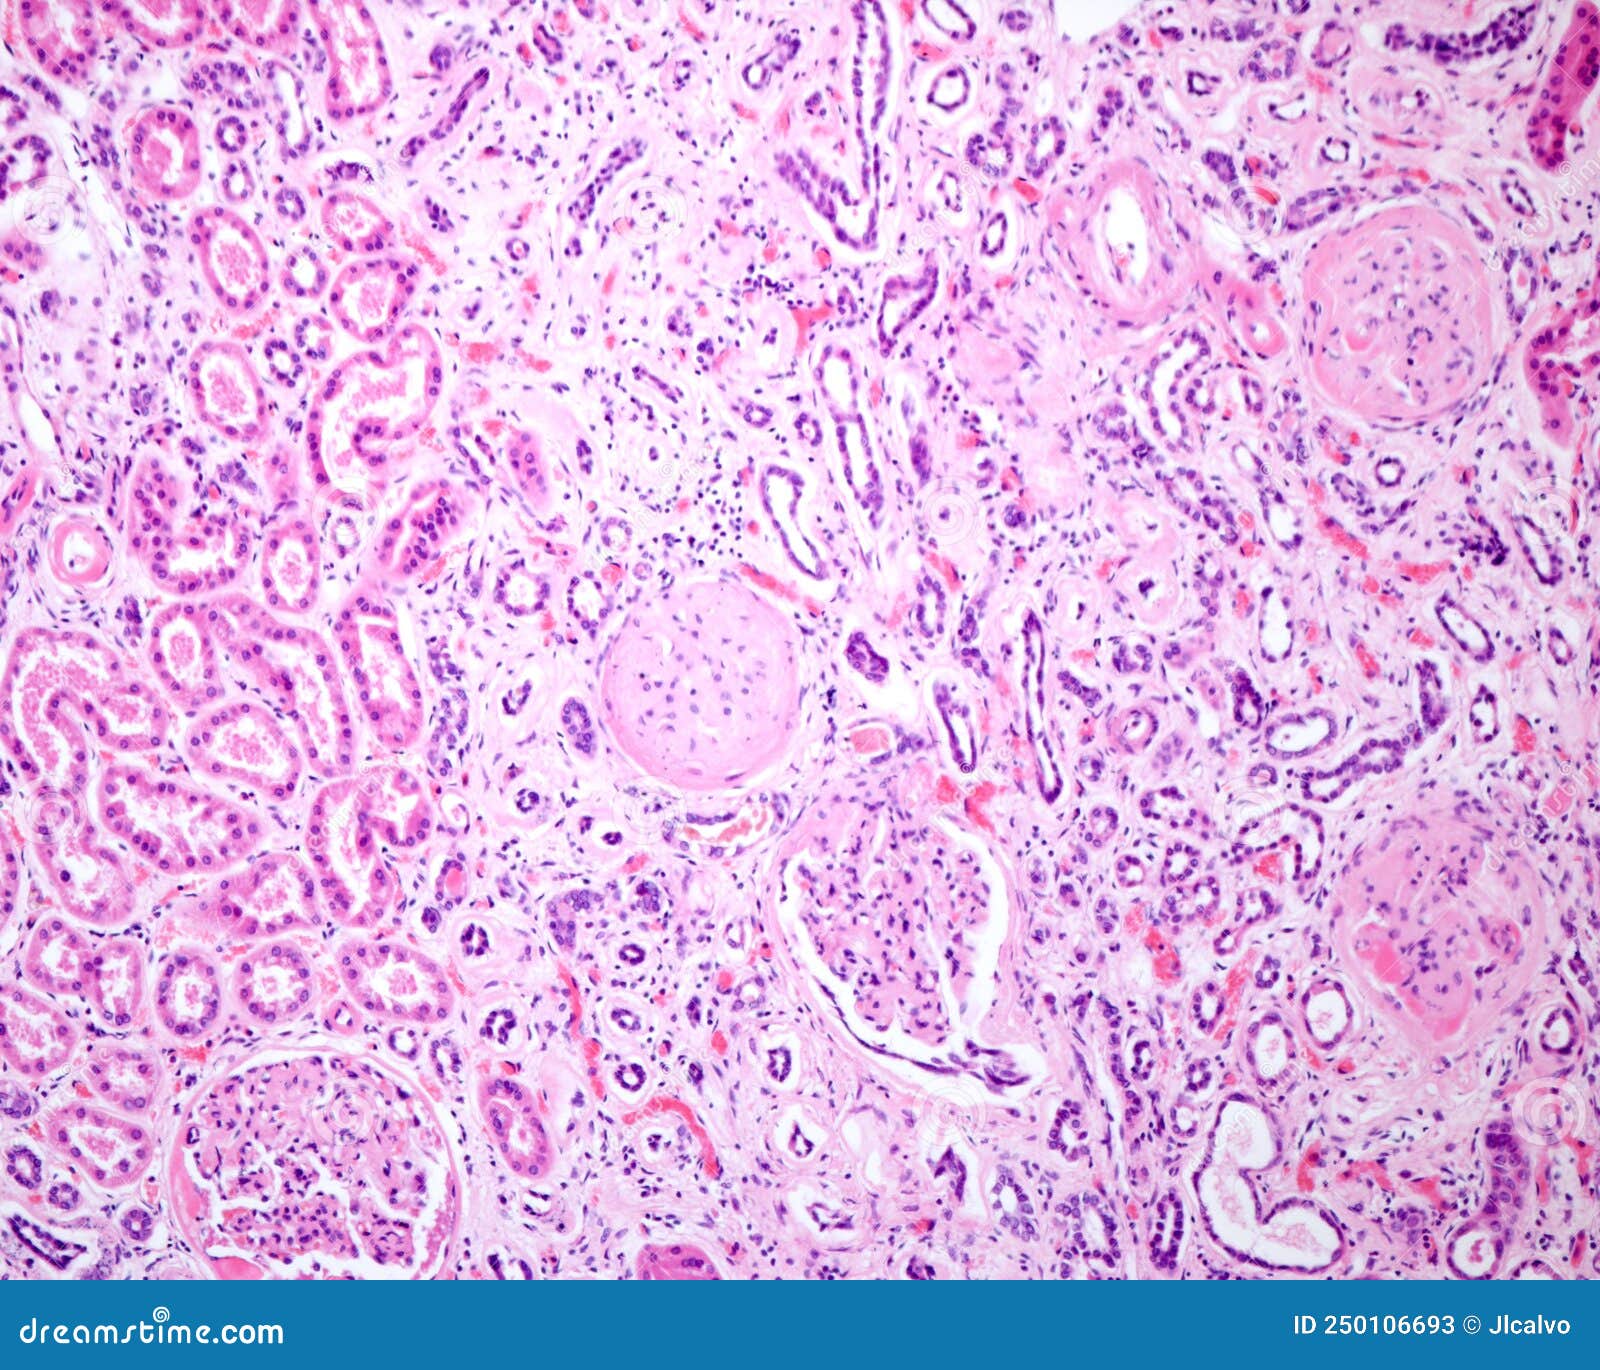 Human Kidney. Diabetic Nephropathy Stock Image - Image of light ...